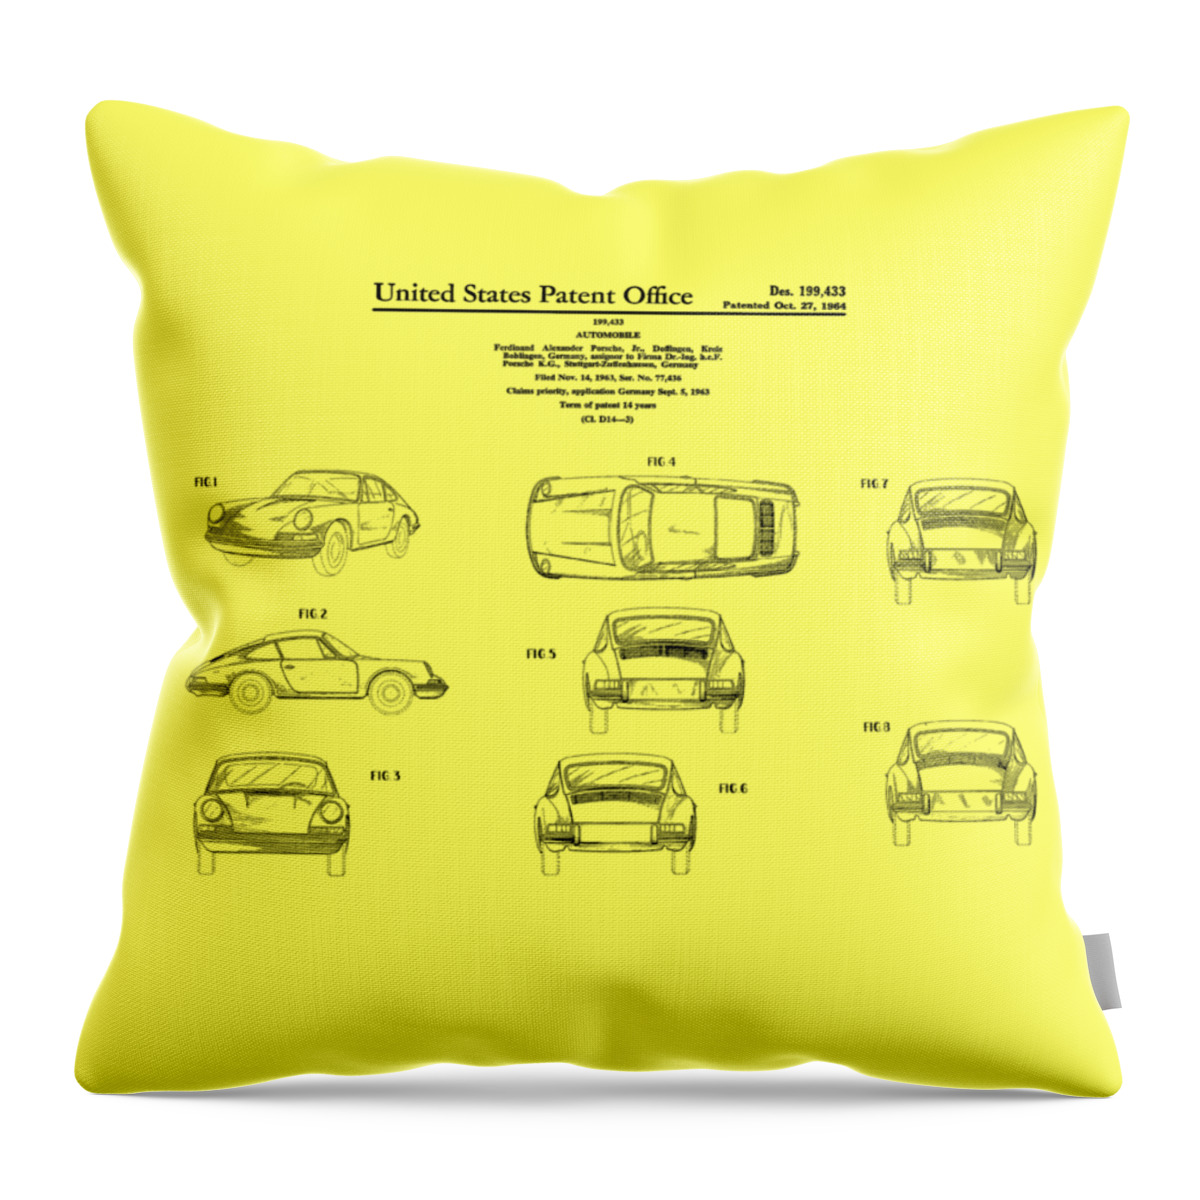 Porsche 911 Patent Throw Pillow featuring the photograph Porsche 911 Patent by Mark Rogan